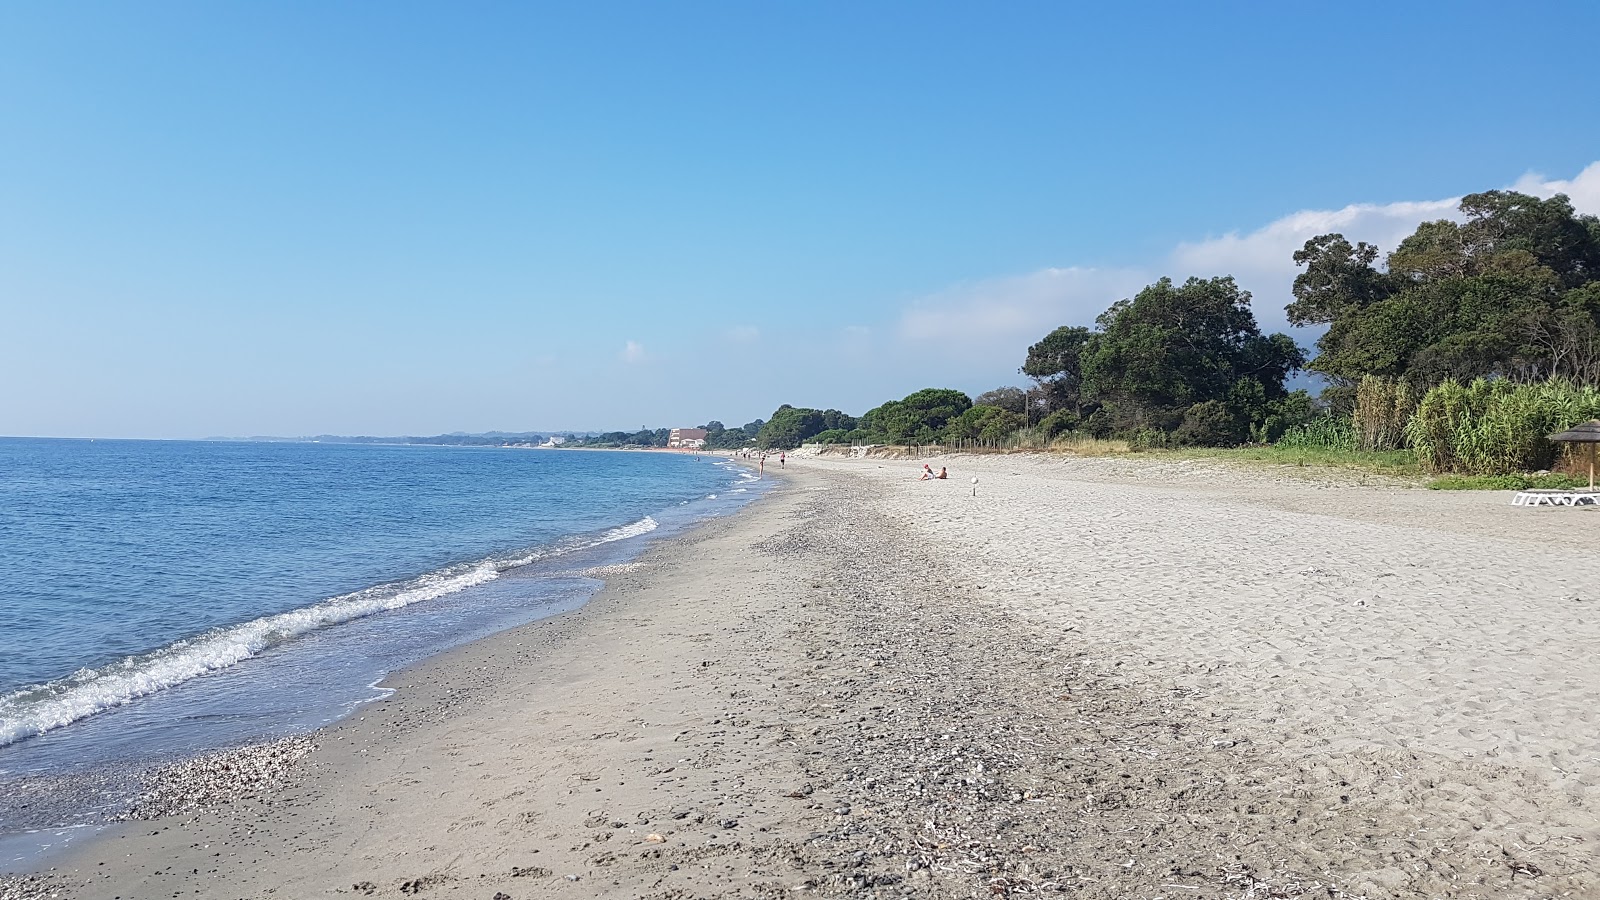 Fotografie cu Ponticchio beach zonă de stațiune de pe plajă